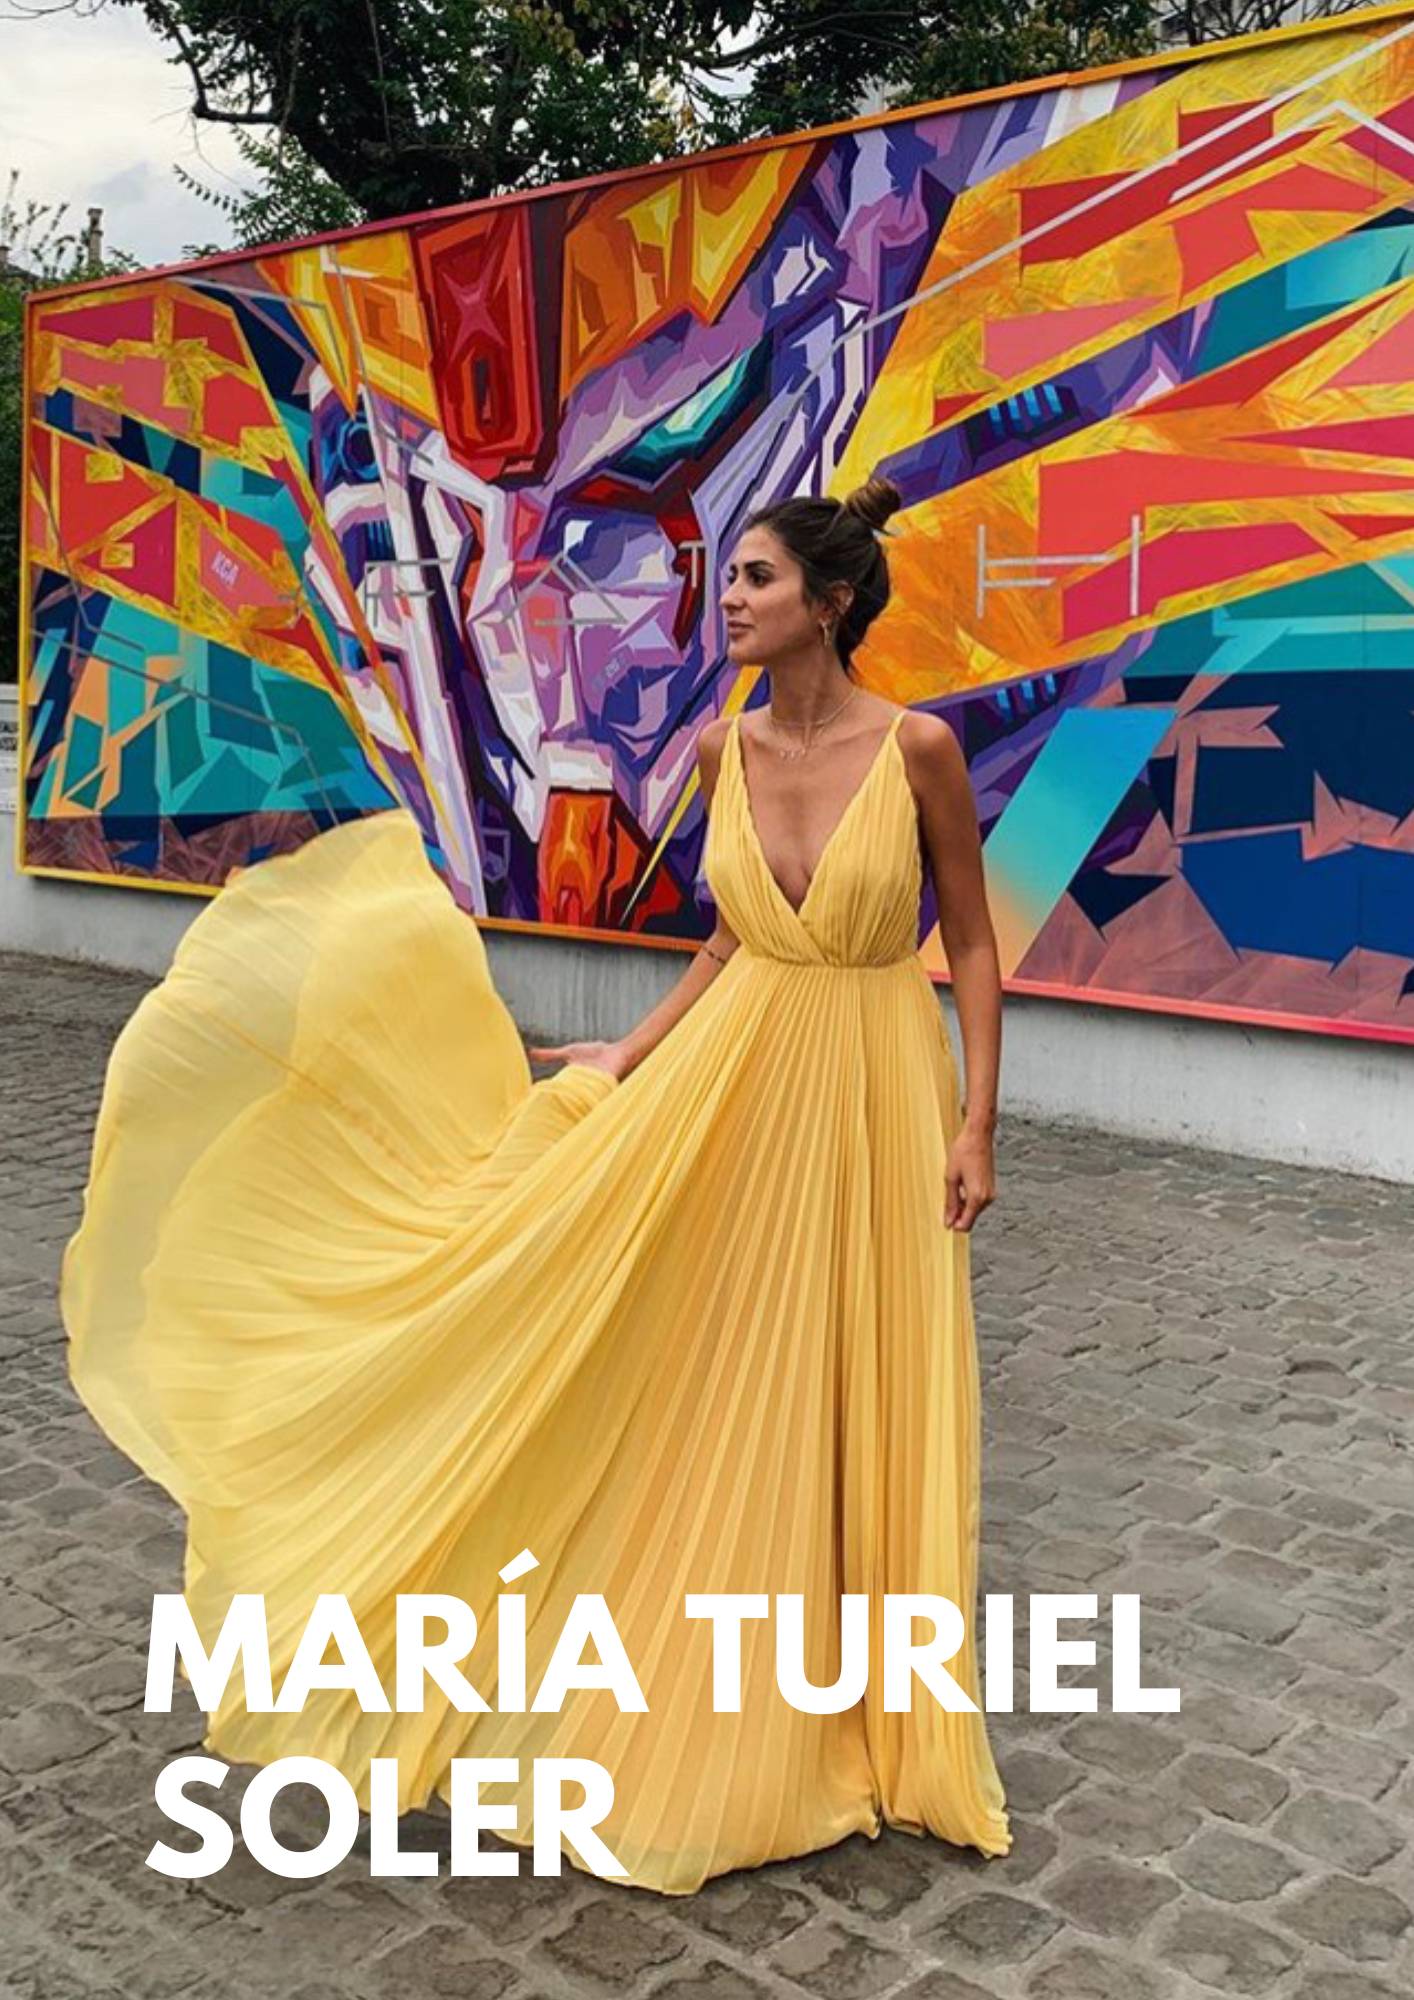 Spanische Influencerin María Turiel Soler in einem luxuriösen gelben Kleid von MAUÎ Official